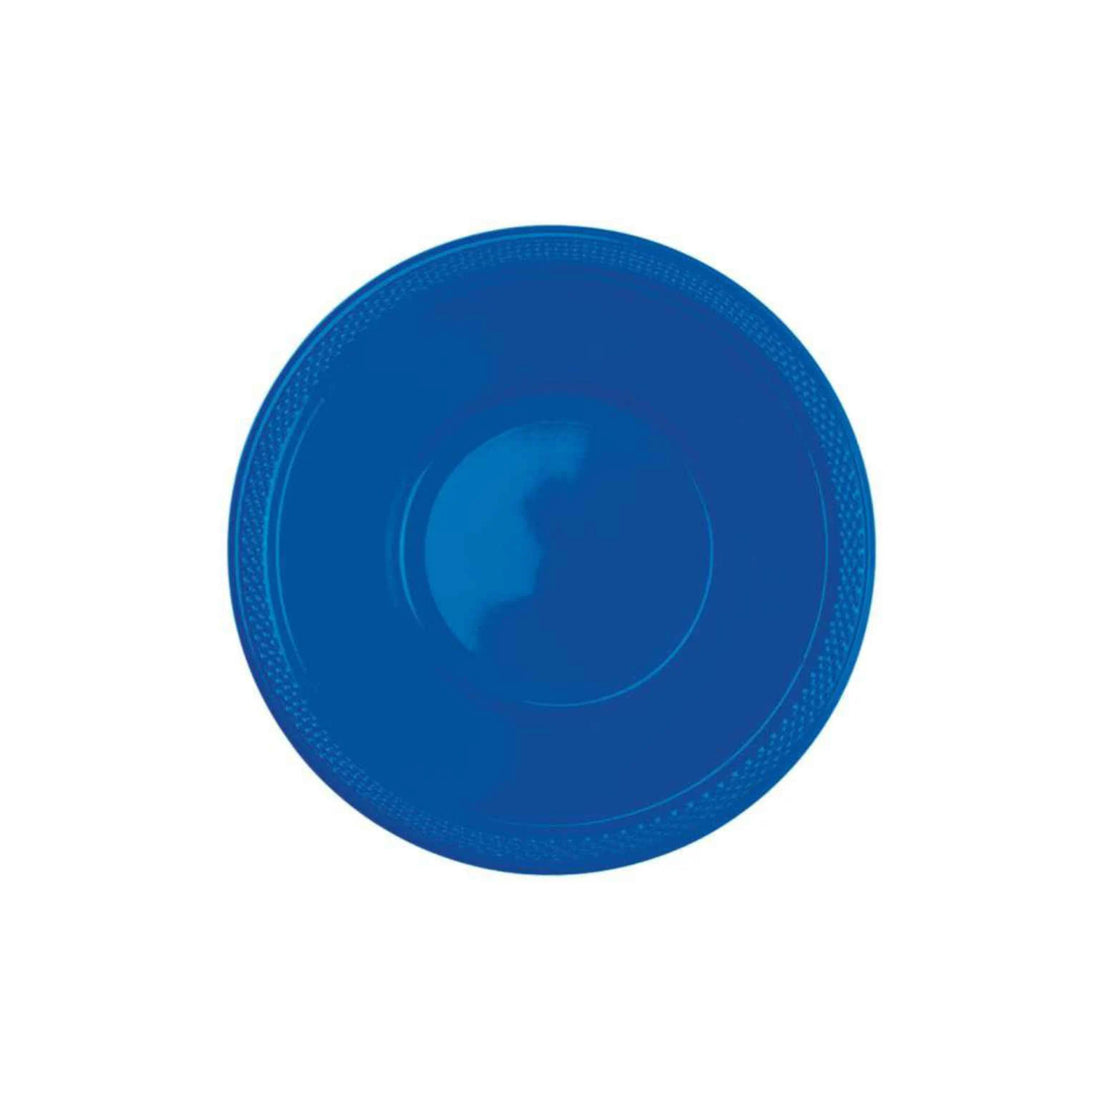 10 Plastic Bowls Bright Royal Blue 335ml (12oz)